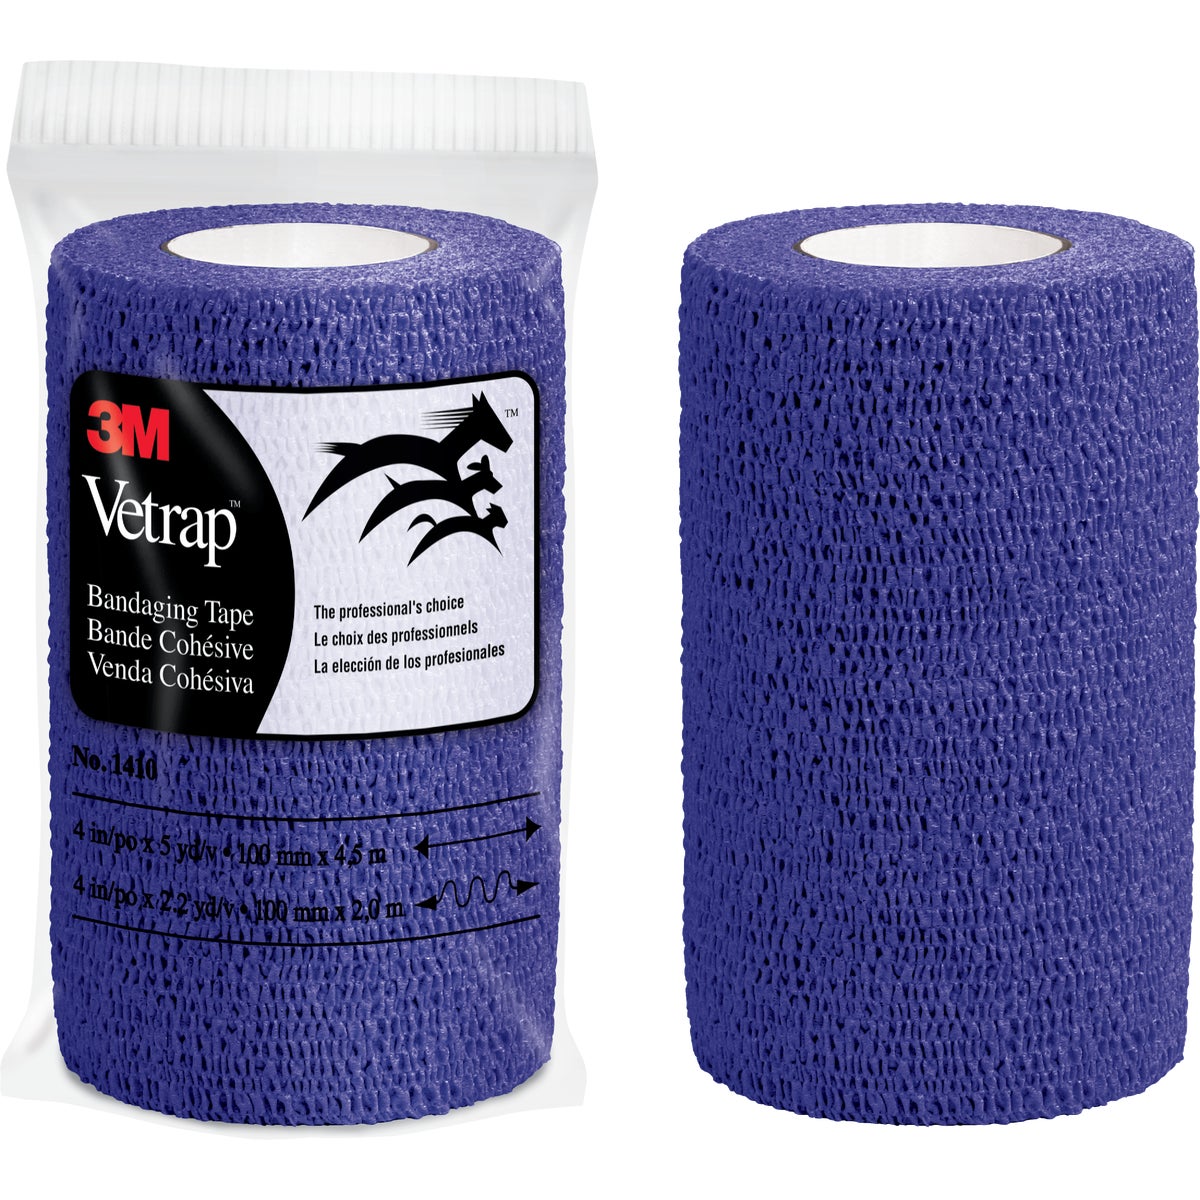 3M Vetrap 4 In. x 5 Yd. Purple Bandaging Wrap